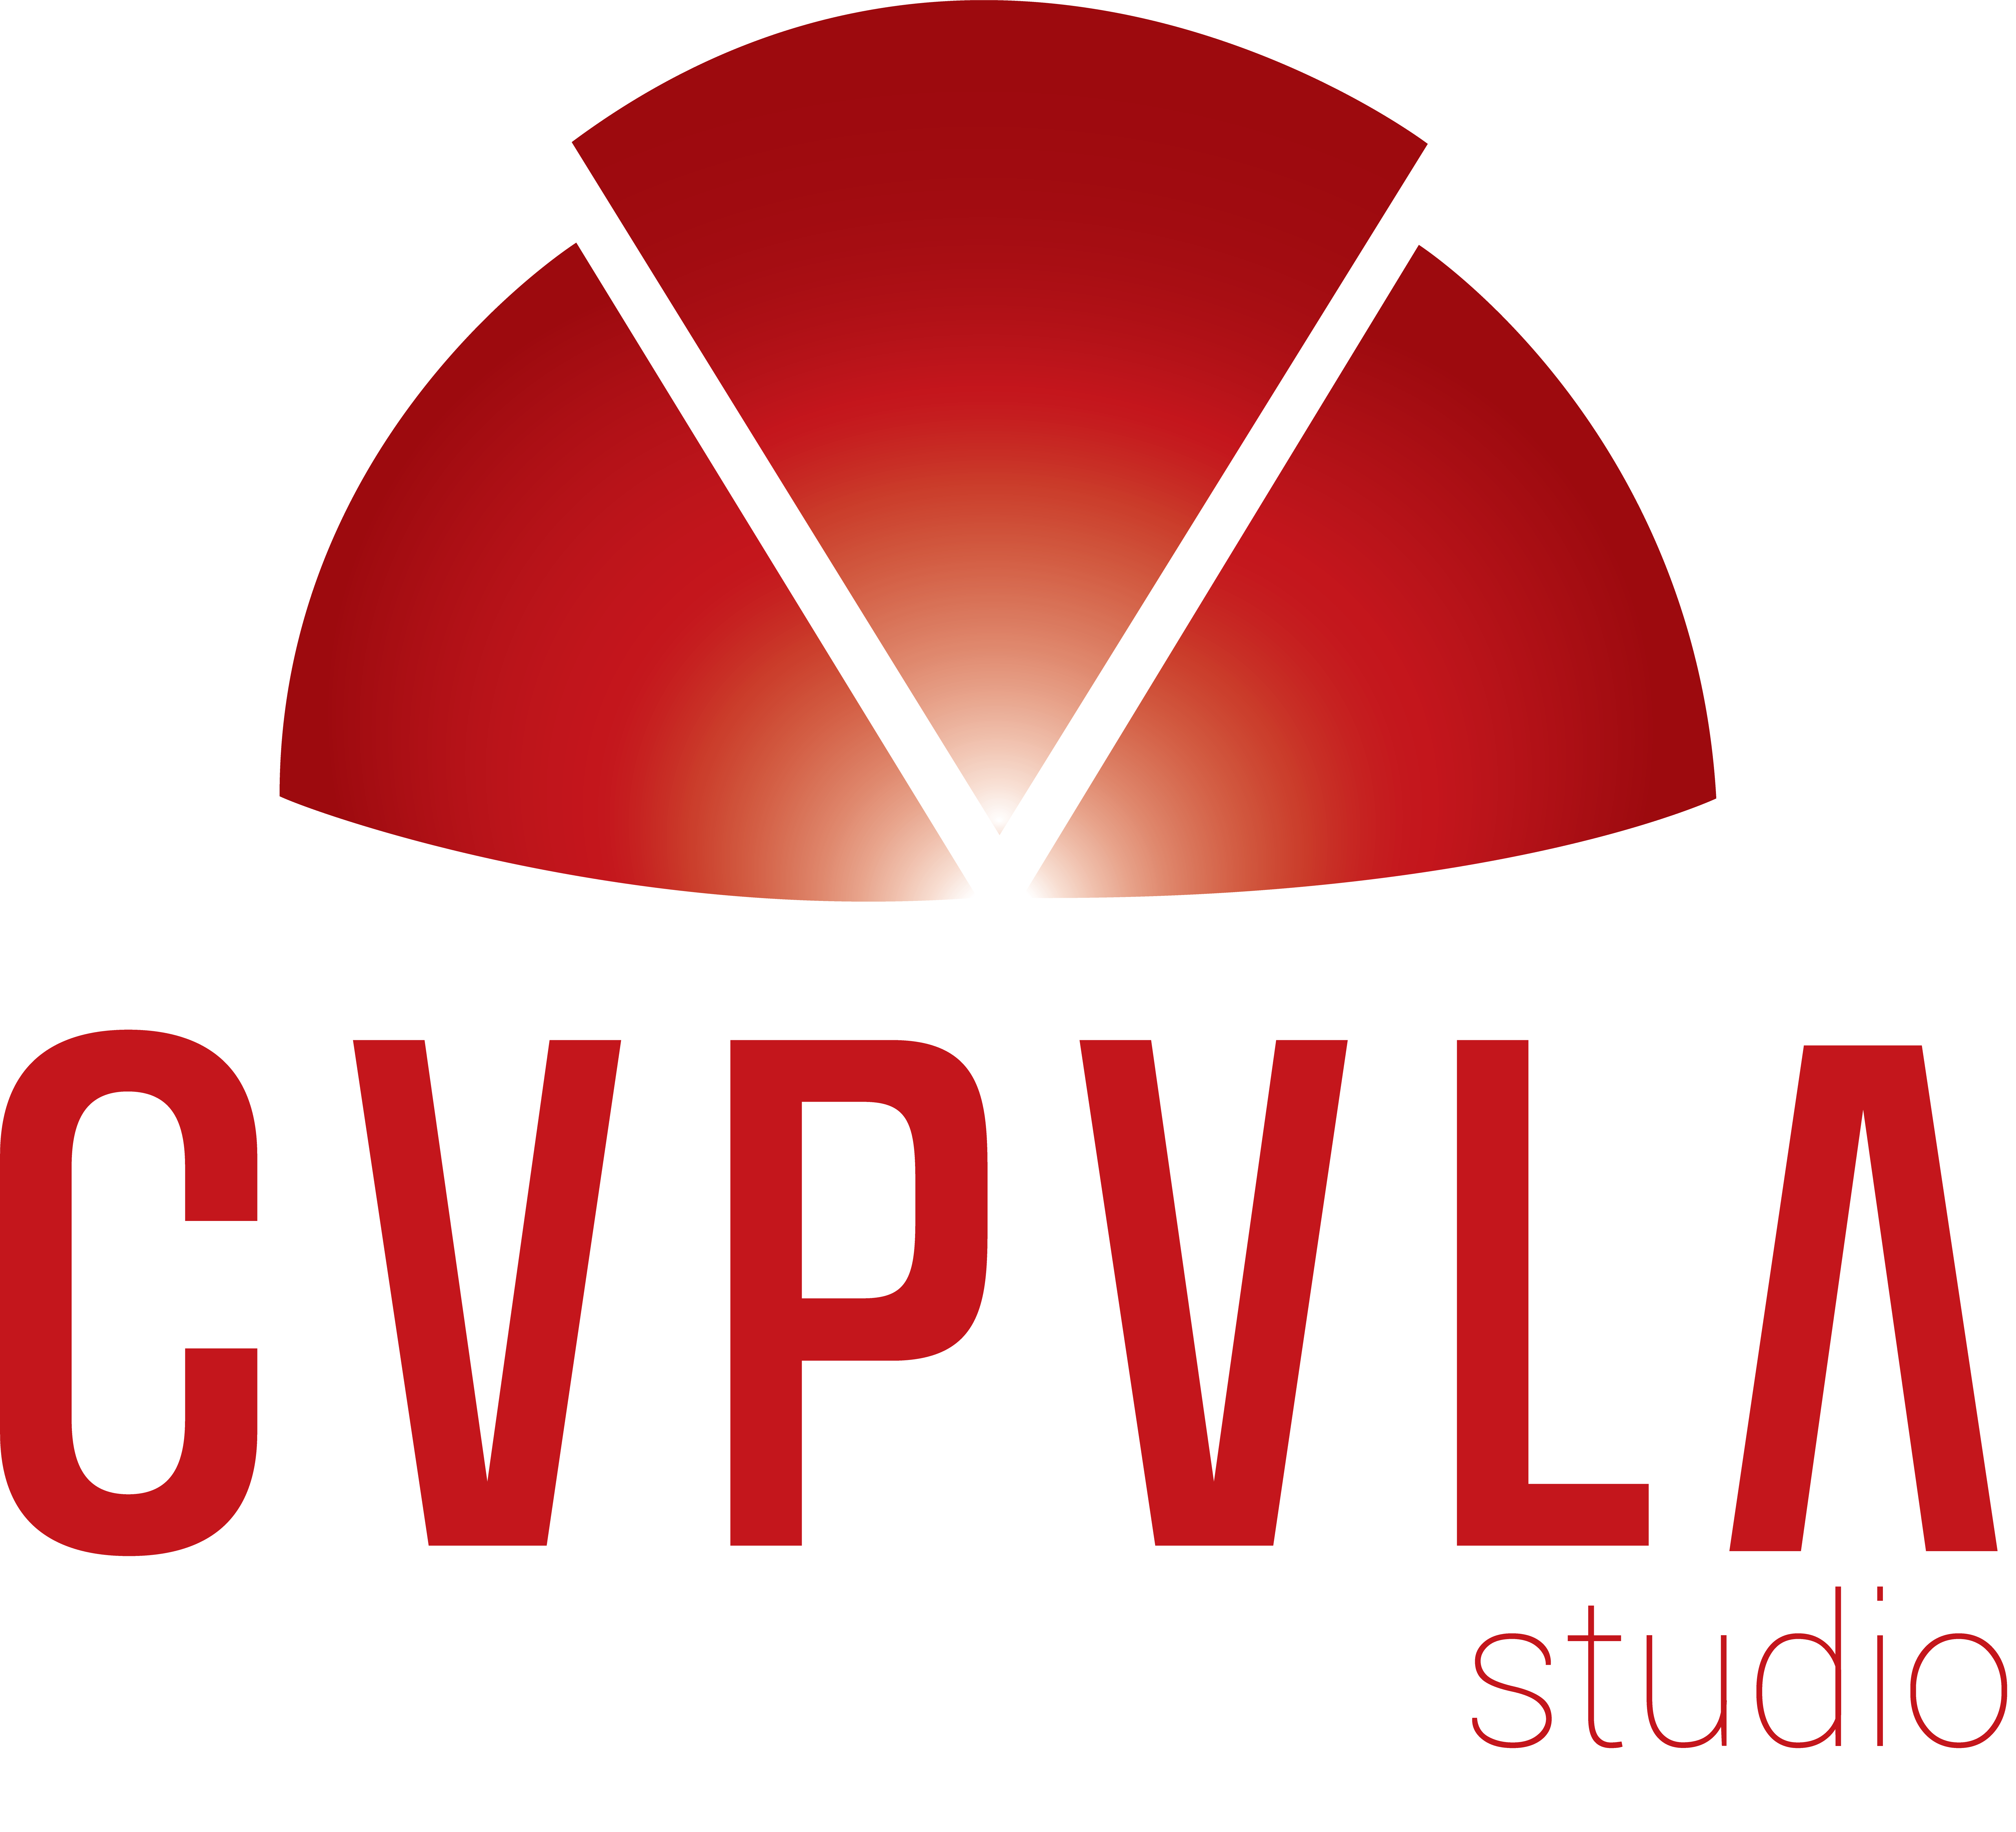 CVPVLA Studio